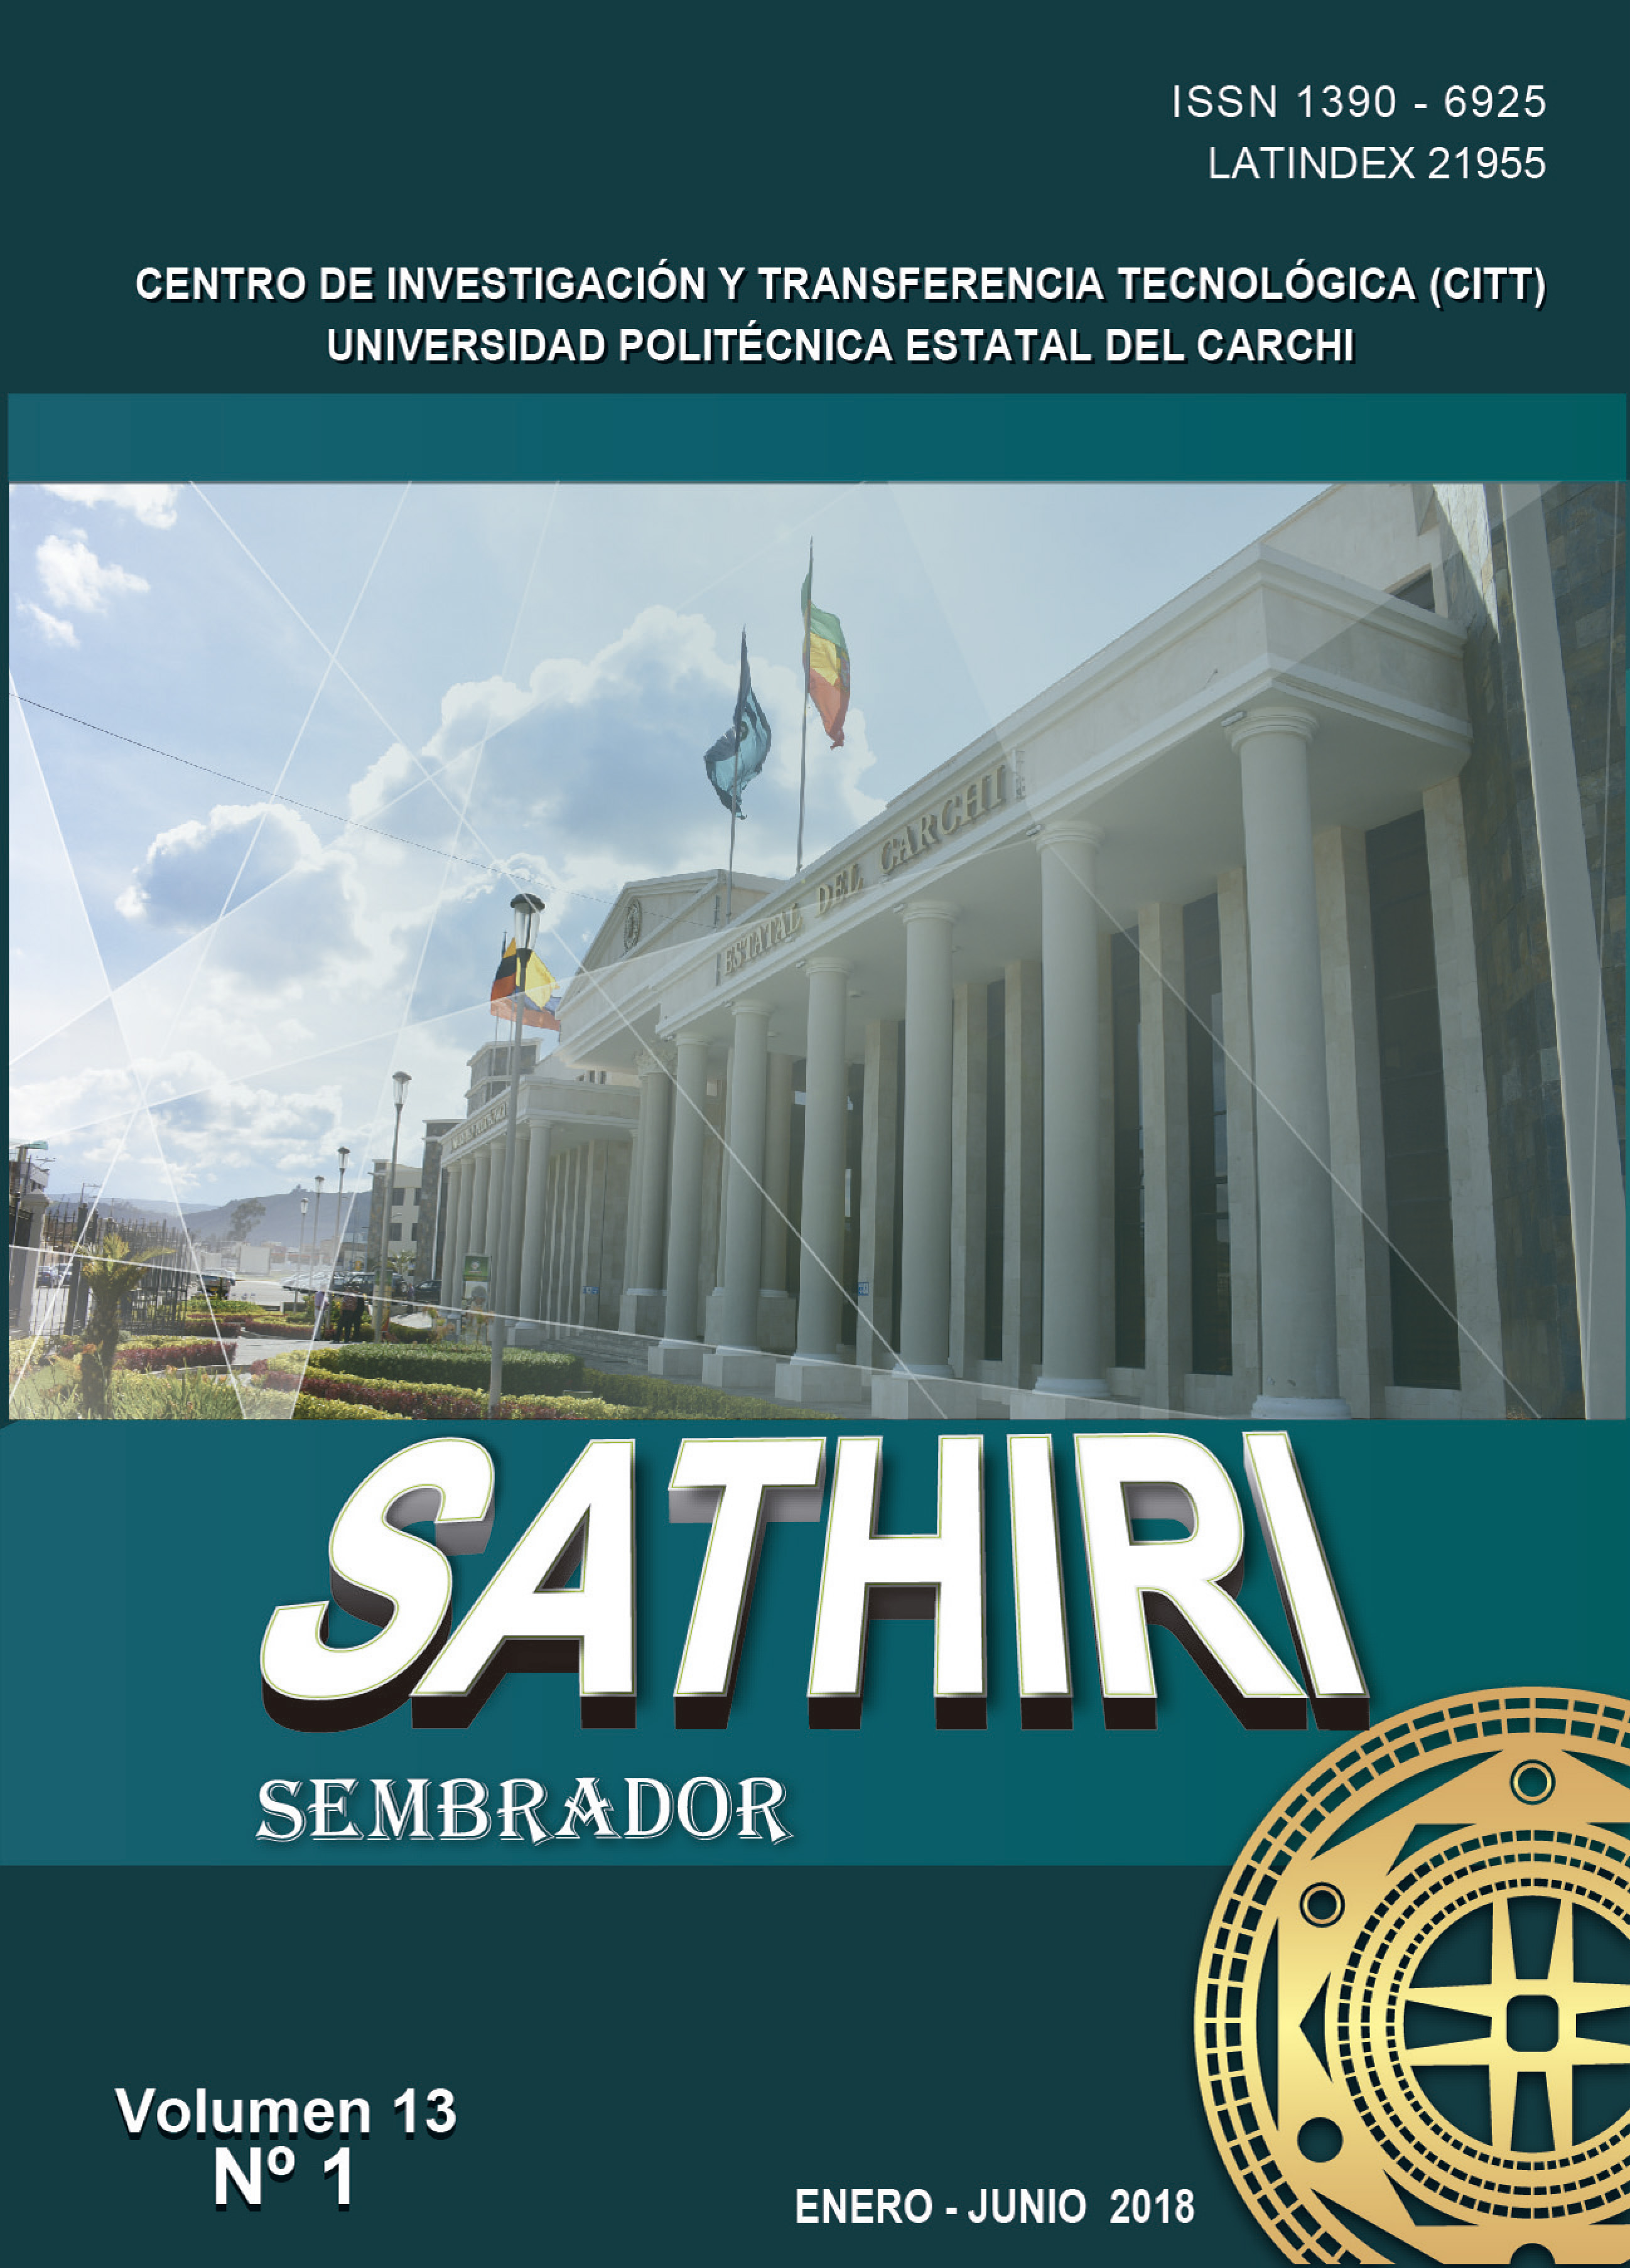 					Ver Vol. 13 Núm. 1 (2018): Revista SATHIRI: Sembrador Vol. 13, N° 1 (Enero - Junio)
				